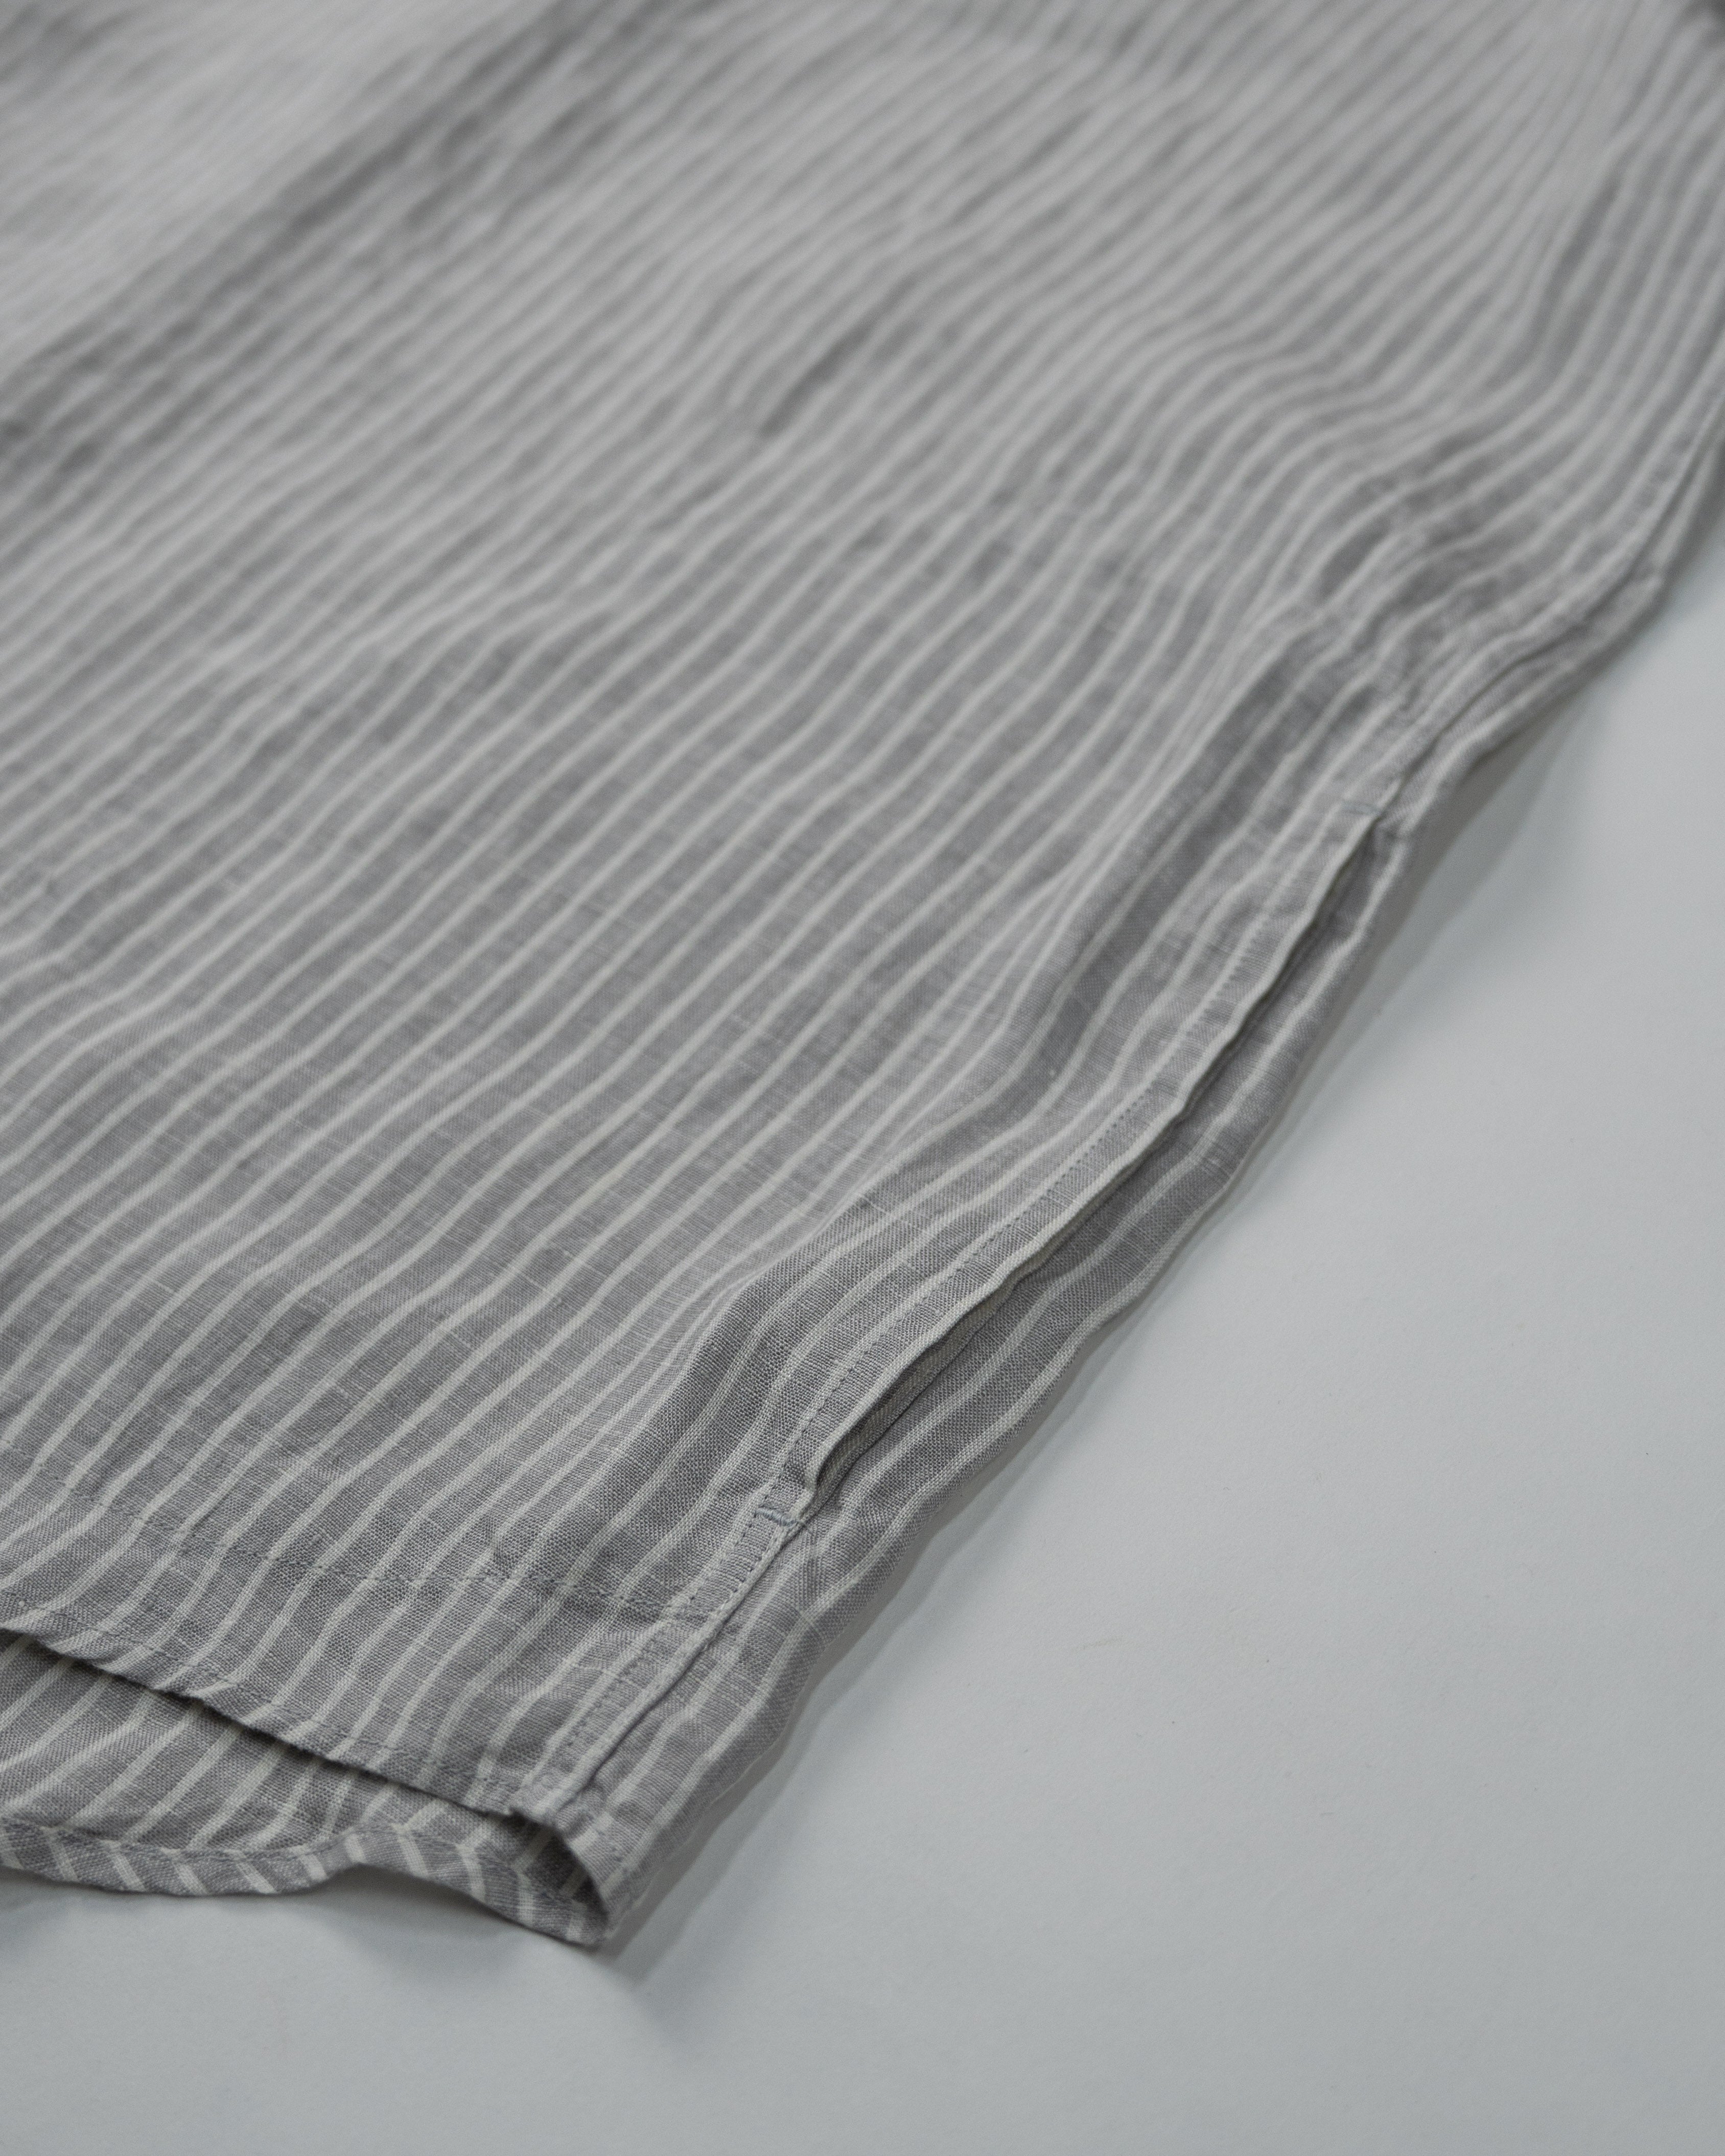 Men's Round Collar P.O Linen Stripe Shirt S/S JD-3569 KLP | Gray-Ecru Stripe